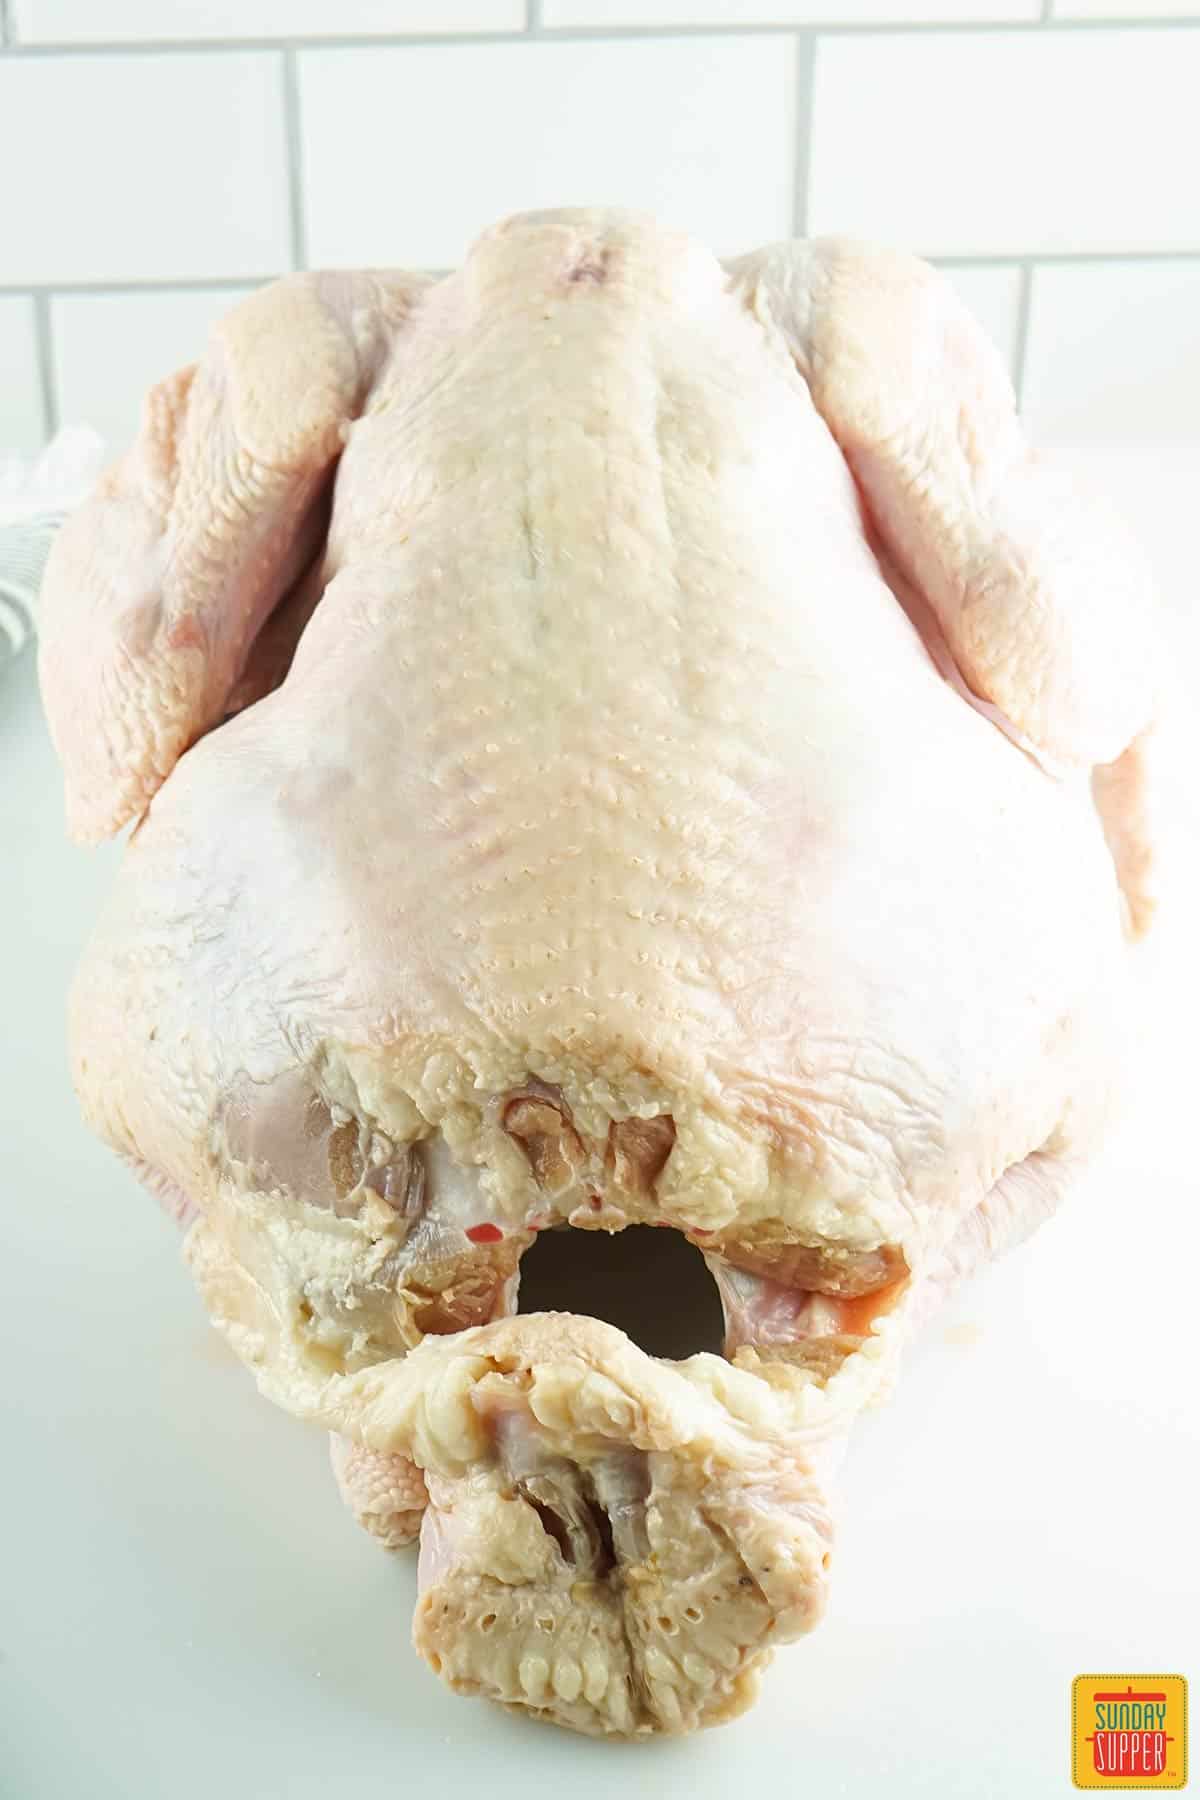 whole turkey breast-side down